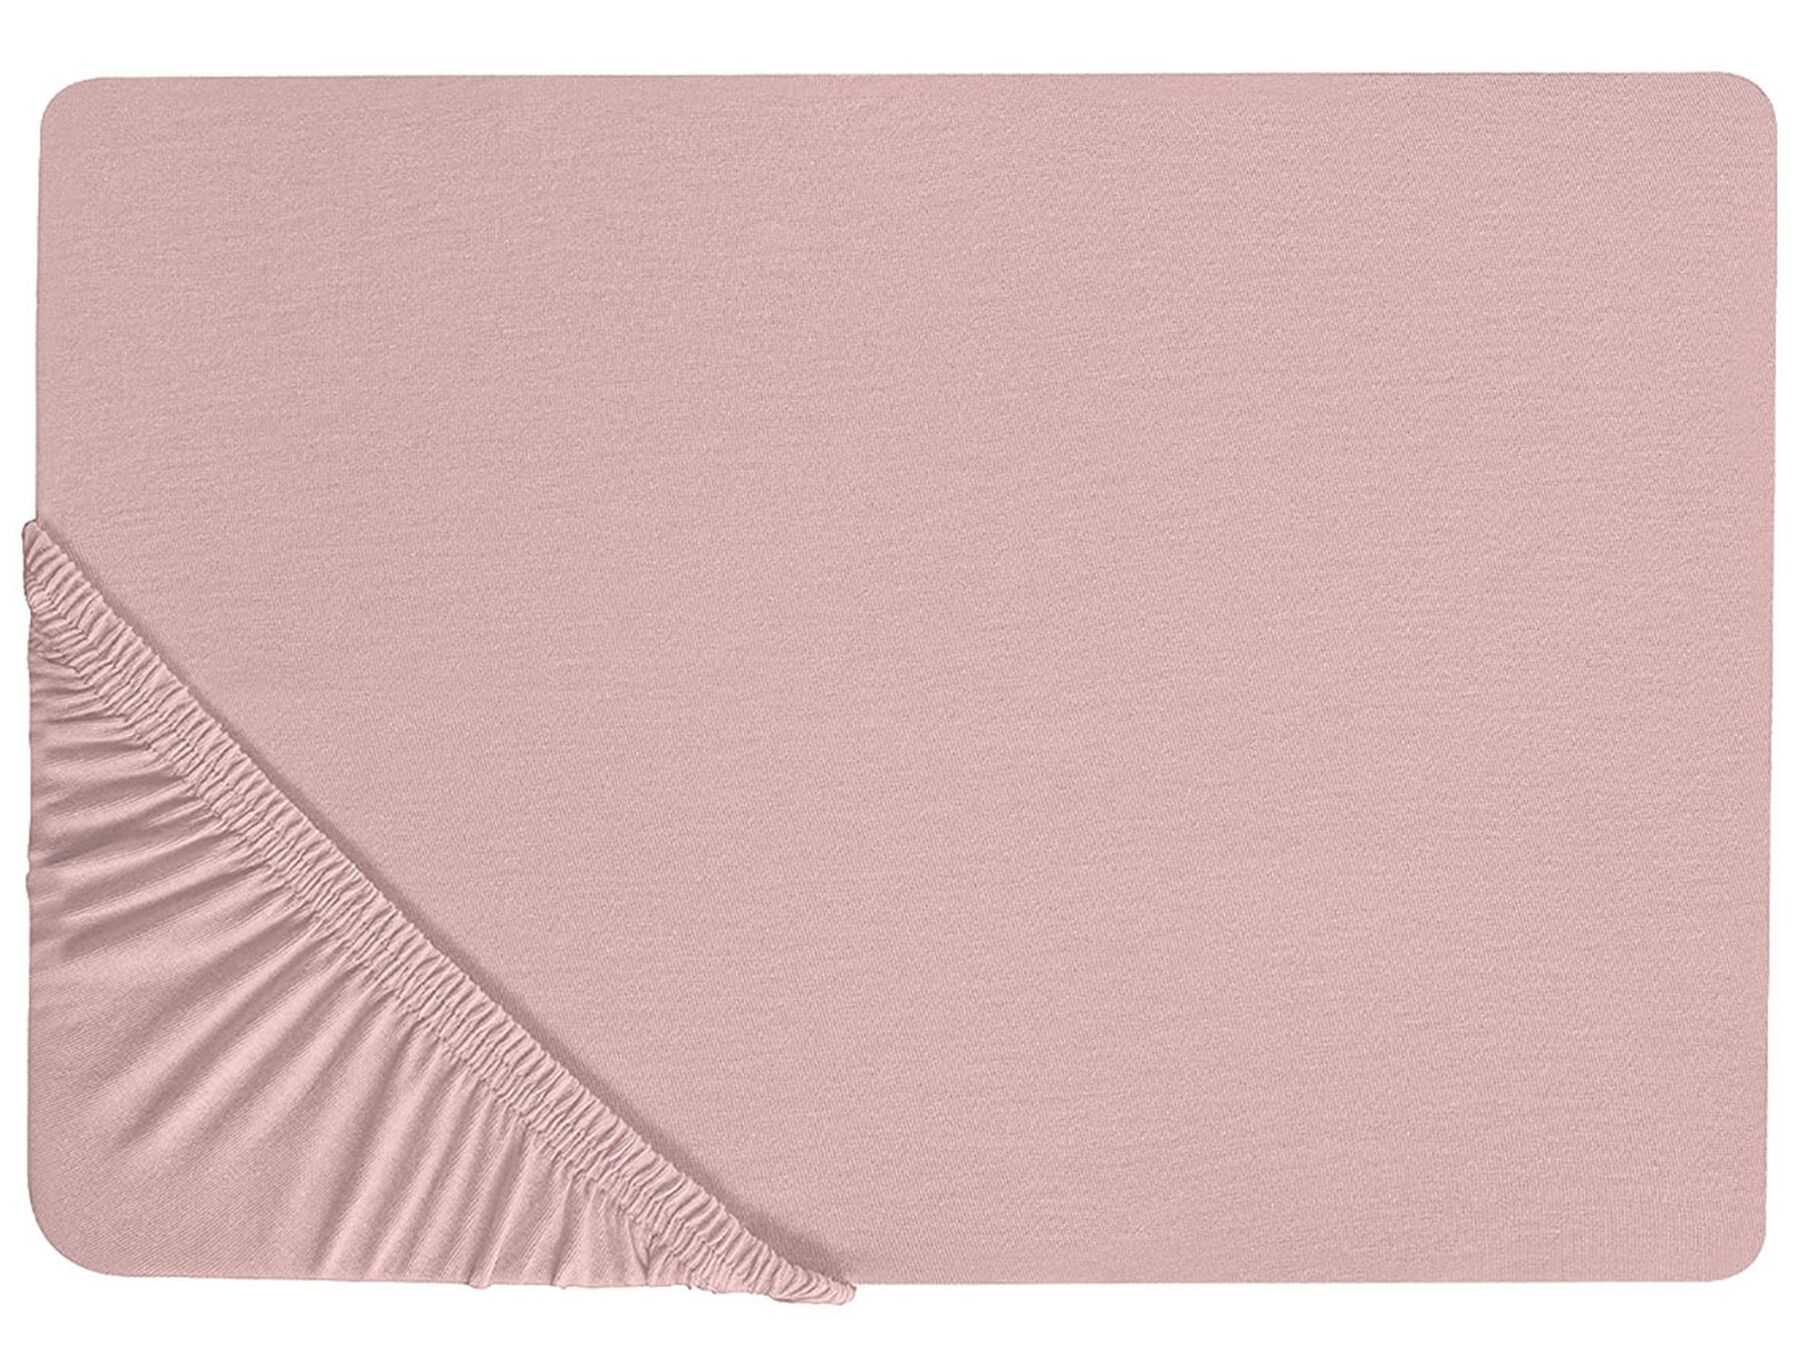 Bavlněné prostěradlo 90 x 200 cm růžové HOFUF_815896